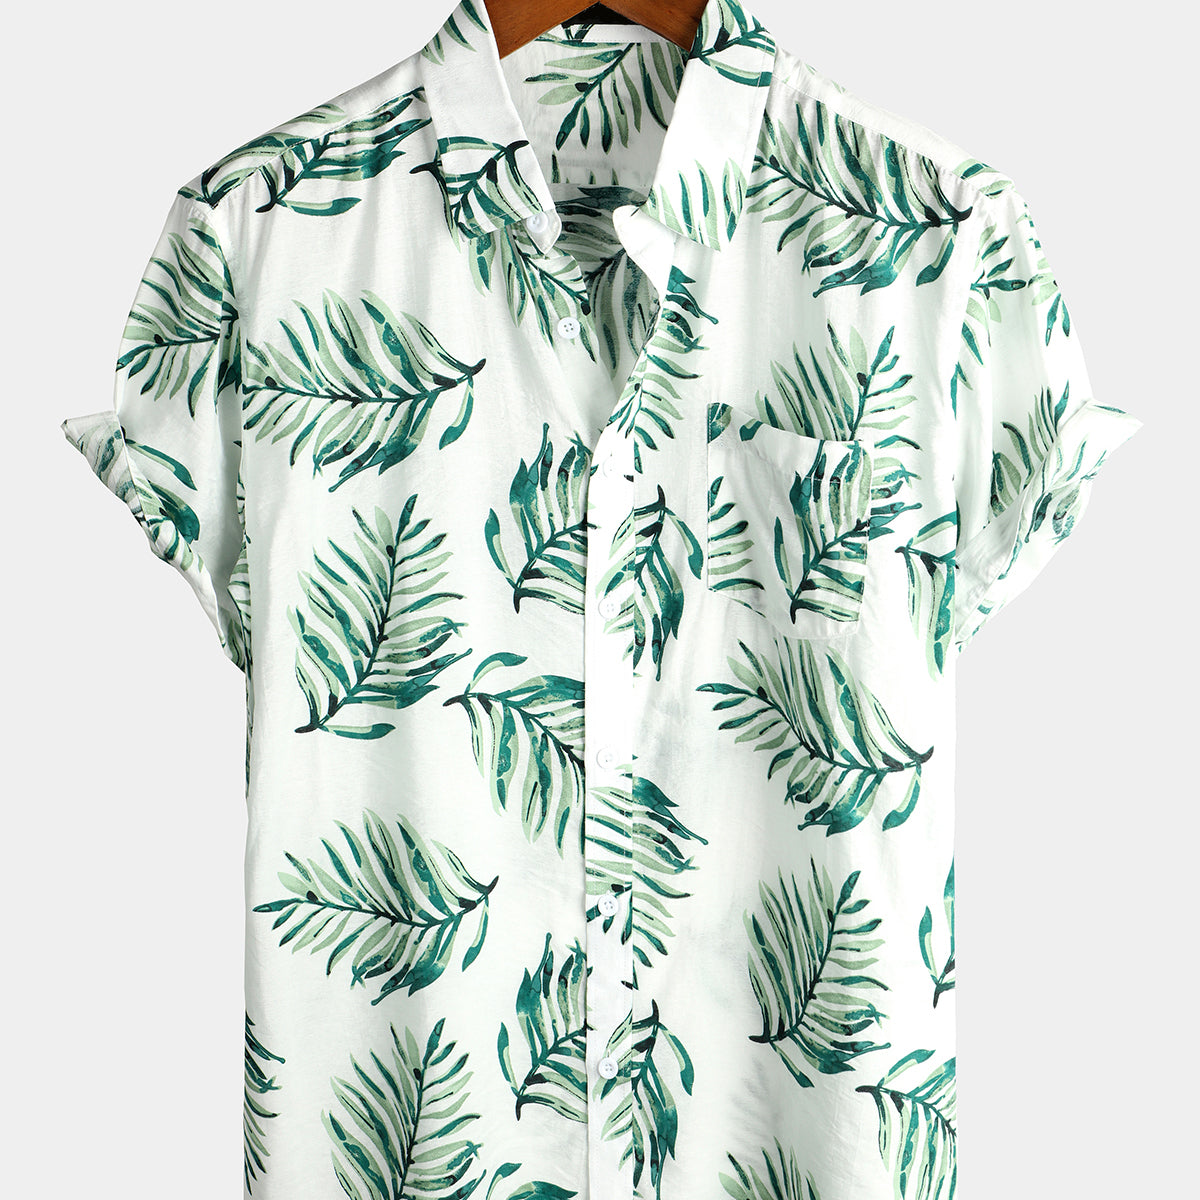 Men's Holiday Cotton Tropical Leaf Pocket Shirt